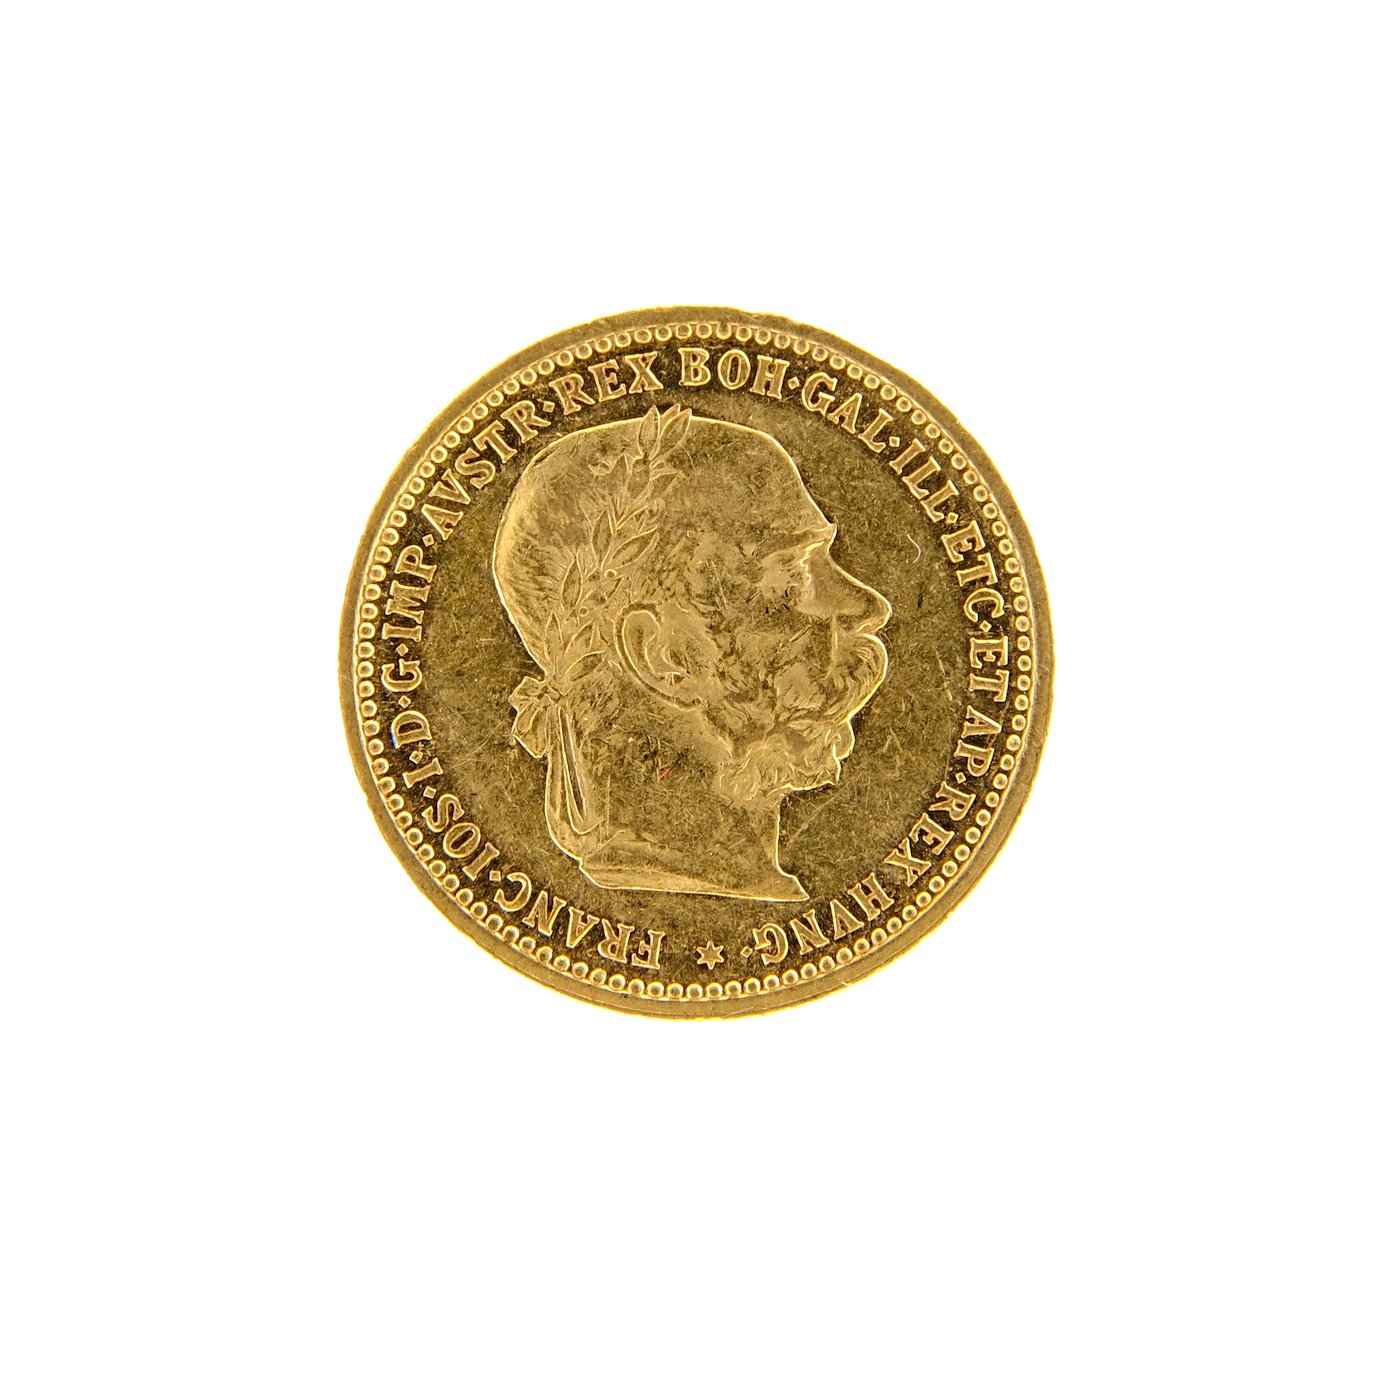 Mince - Rakousko Uhersko zlatá 10 Koruna 1905 rakouská. Zlato 900/1000, hrubá hmotnost mince 3,387g